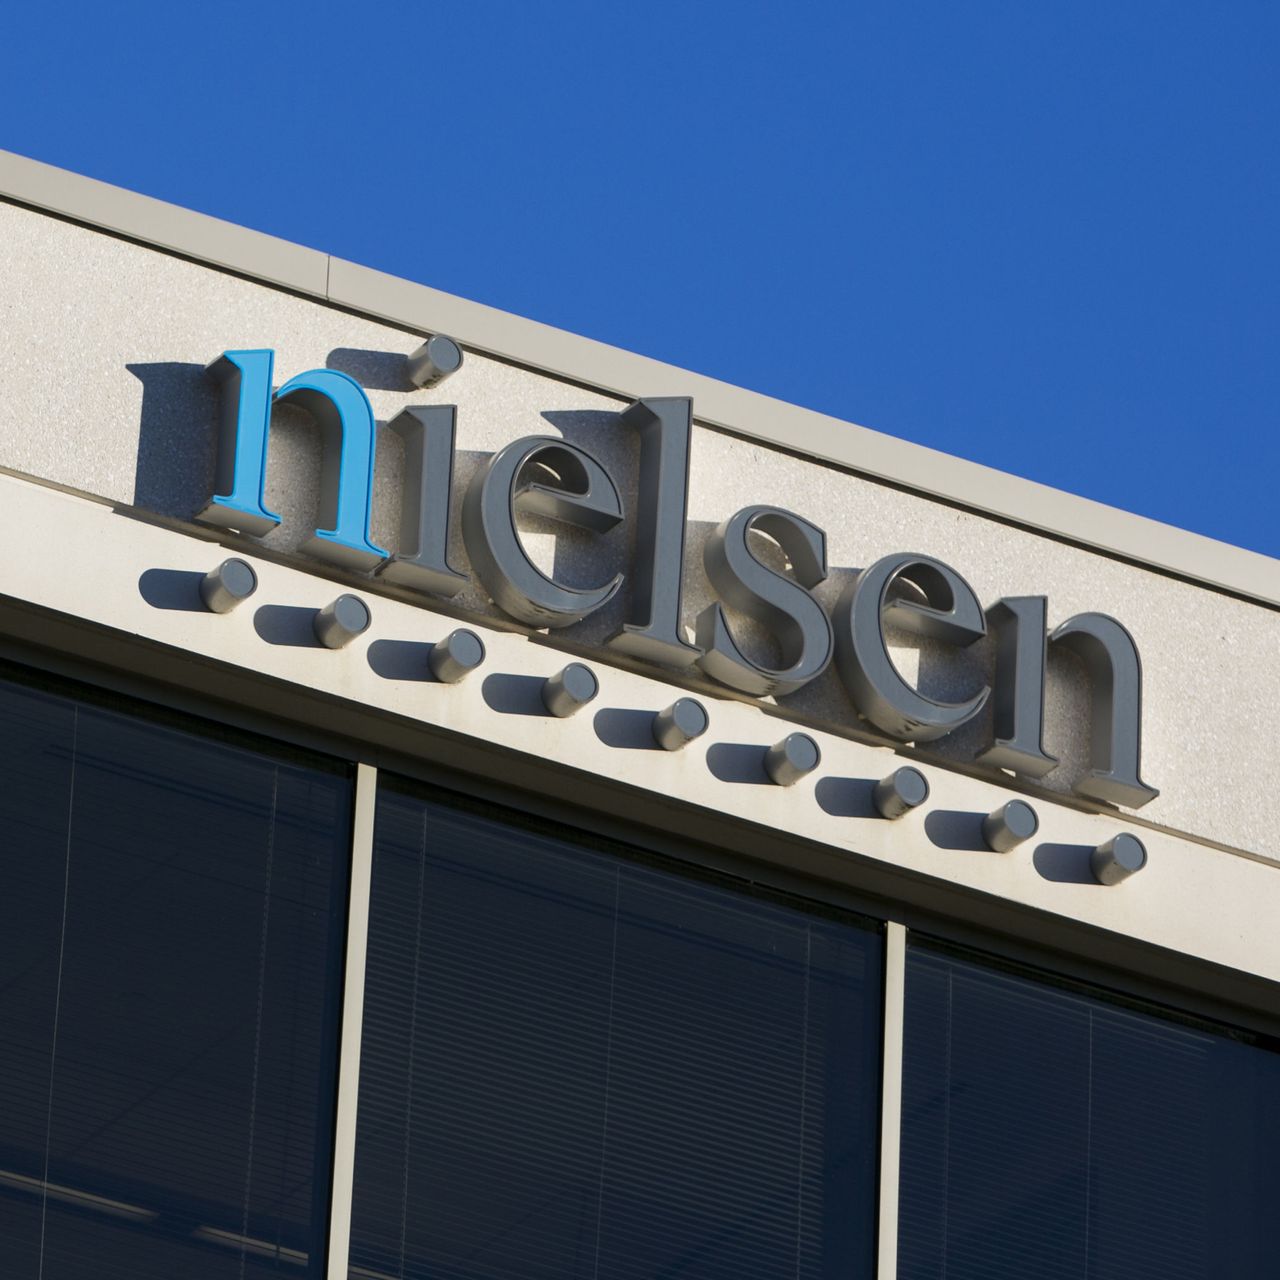 Nielsen2